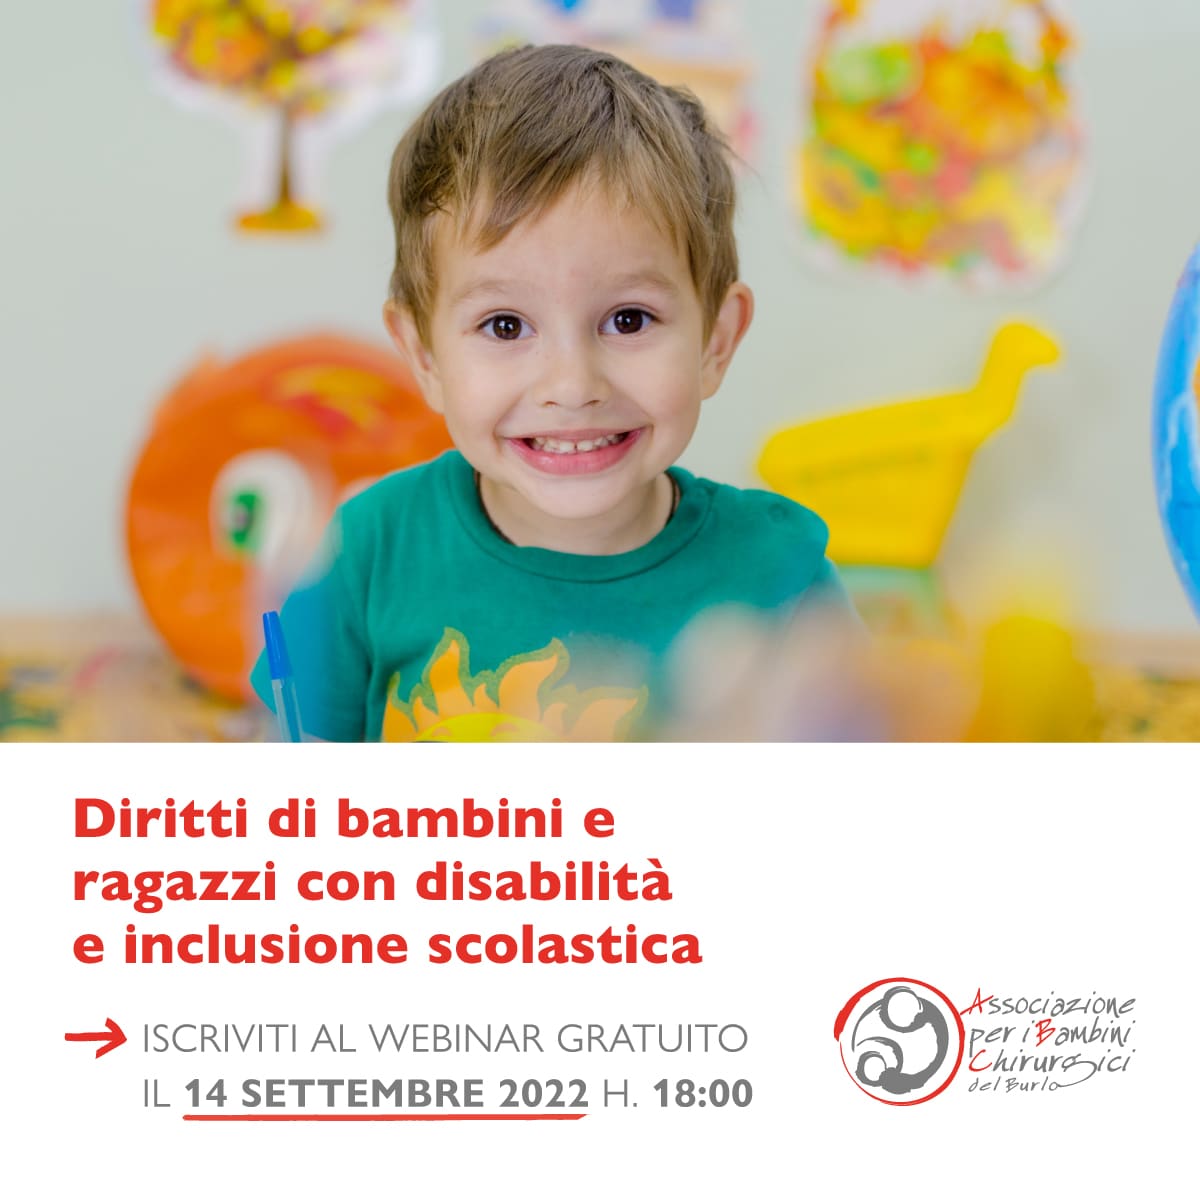 “Tutela e diritti”: da settembre tornano i webinar gratuiti sui diritti dei bambini con disabilità